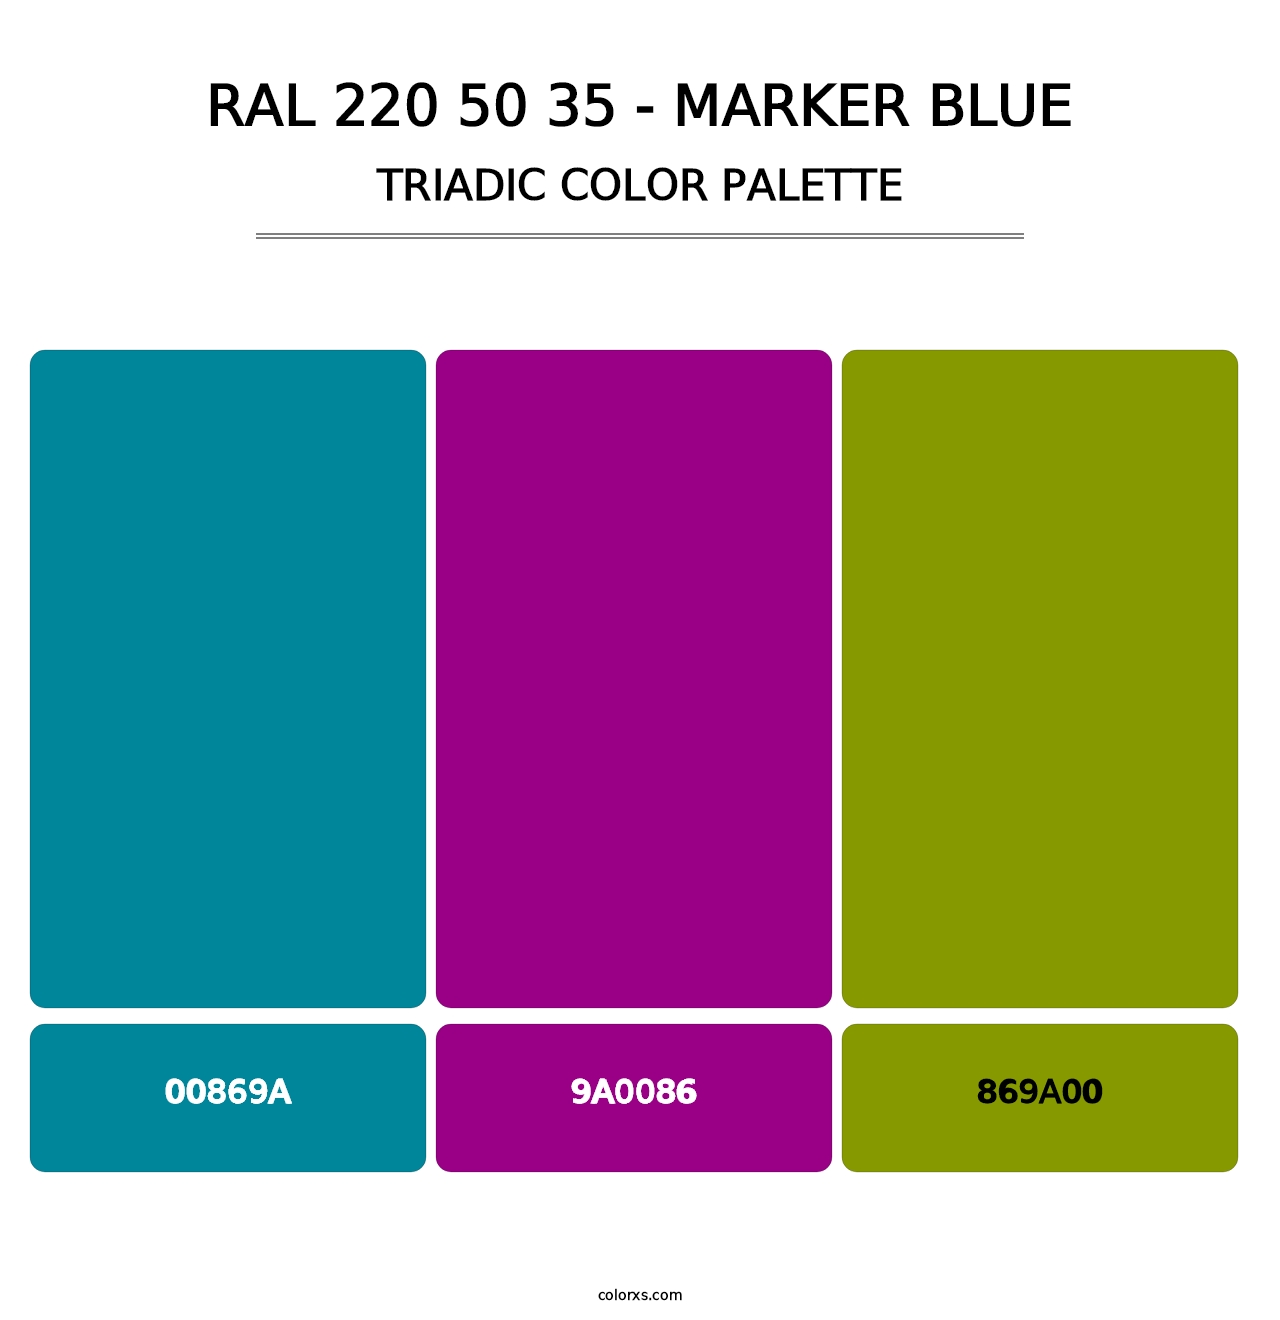 RAL 220 50 35 - Marker Blue - Triadic Color Palette